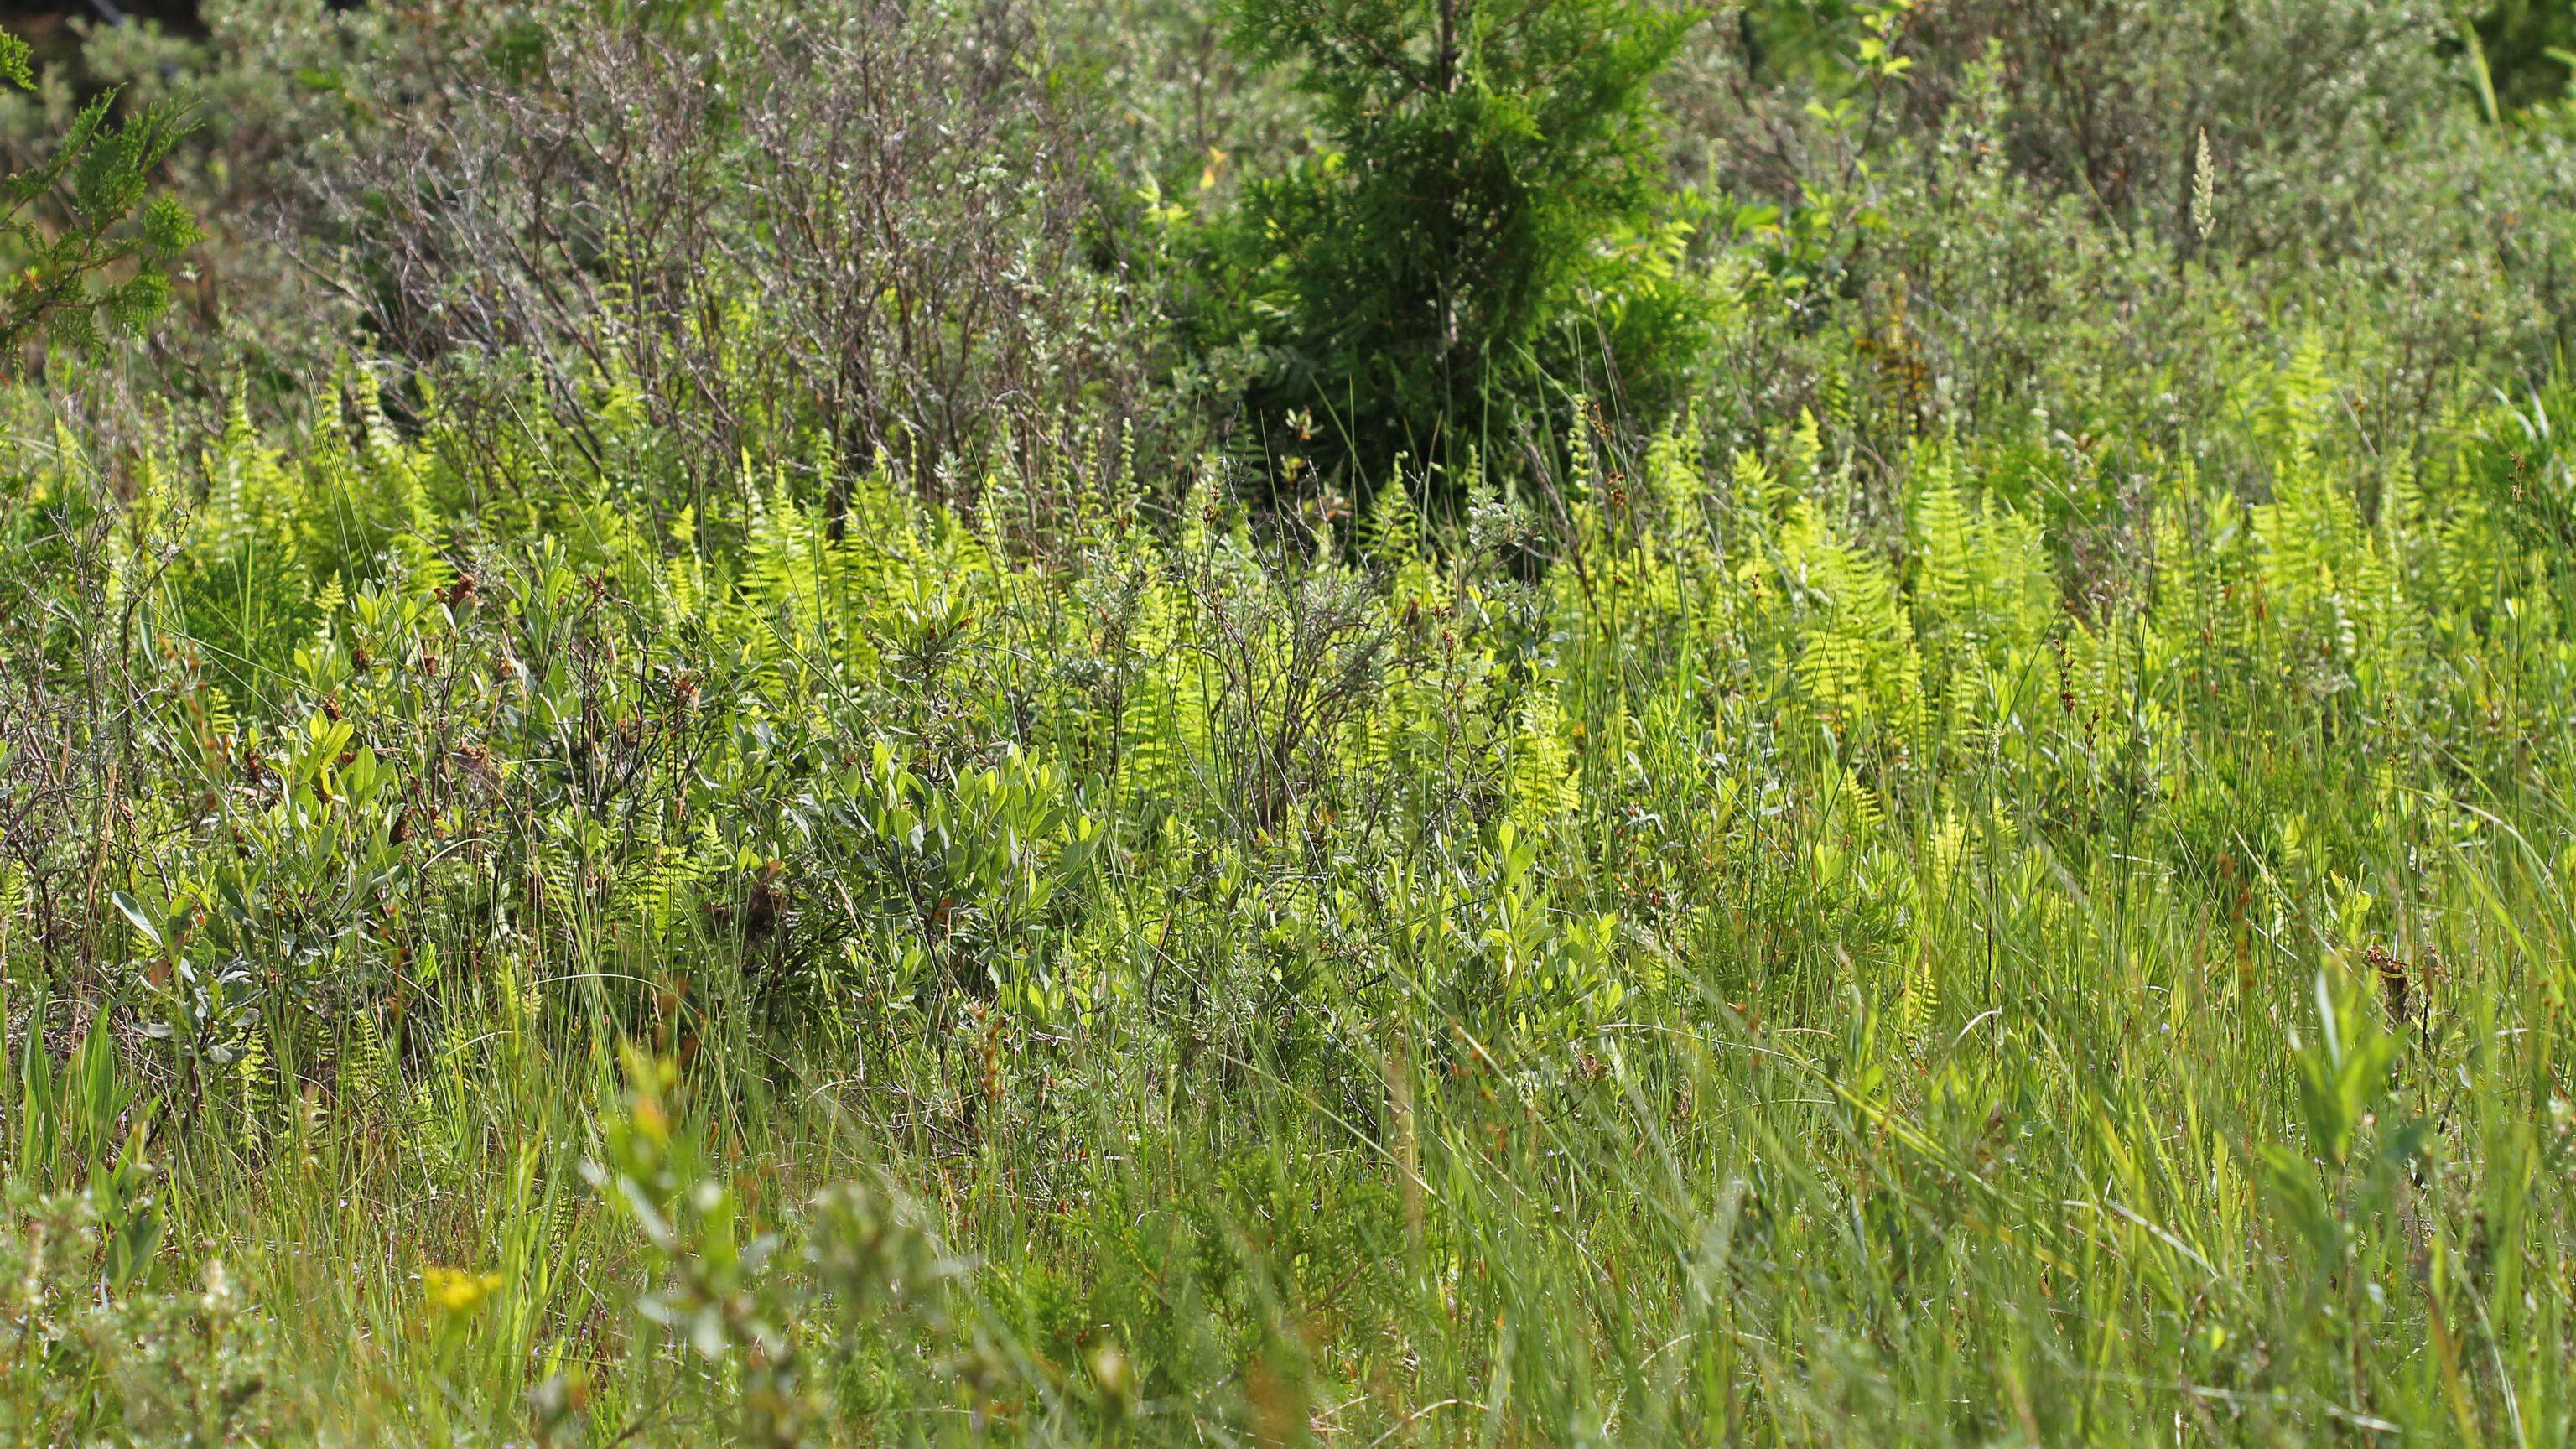 Image of Marsh Fern